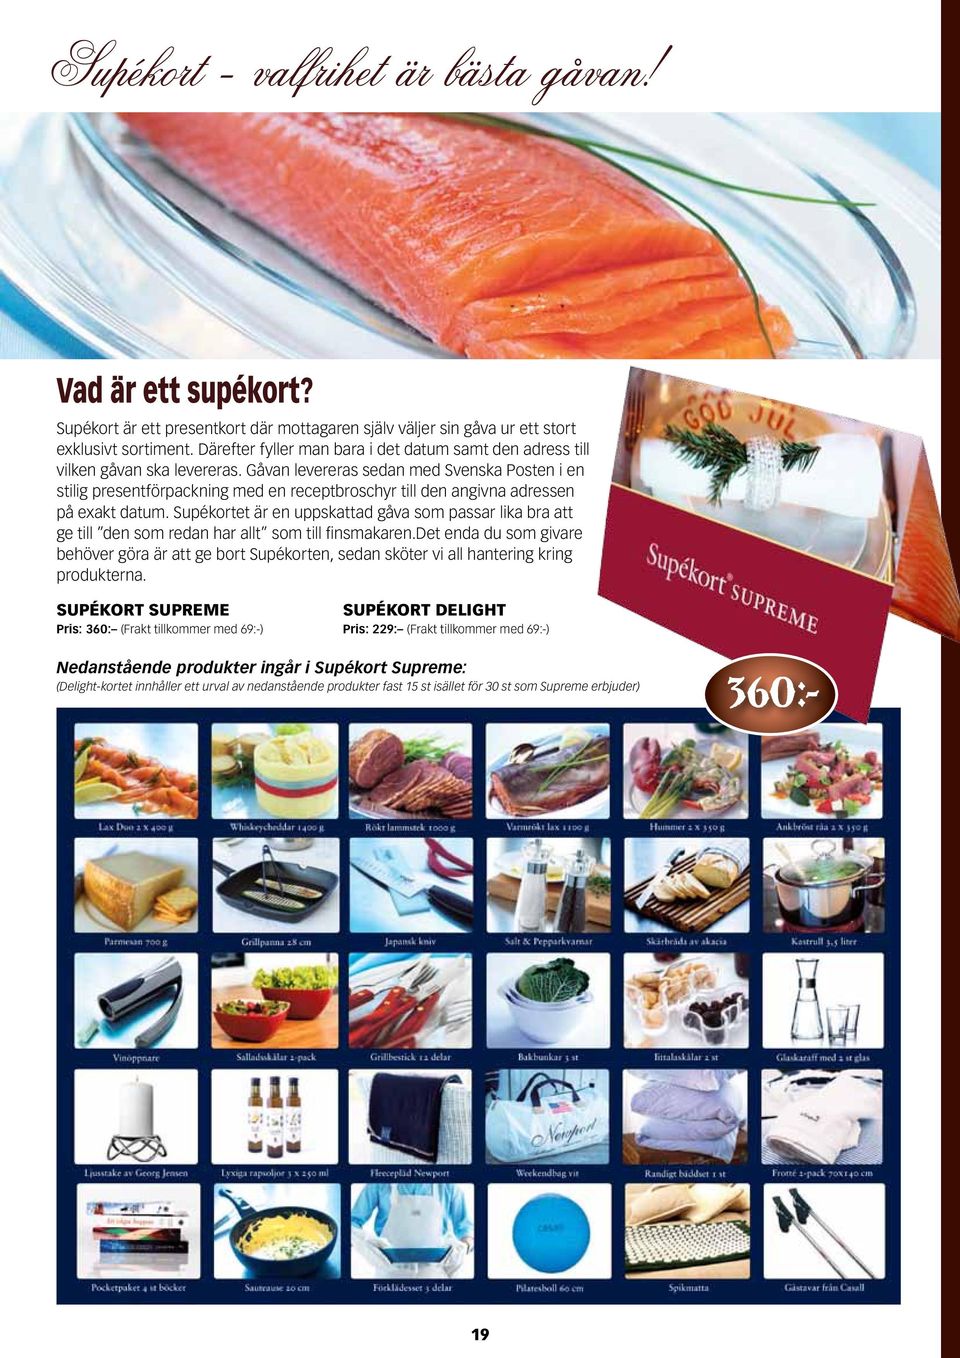 Gåvan levereras sedan med Svenska Posten i en stilig presentförpackning med en receptbroschyr till den angivna adressen på exakt datum.